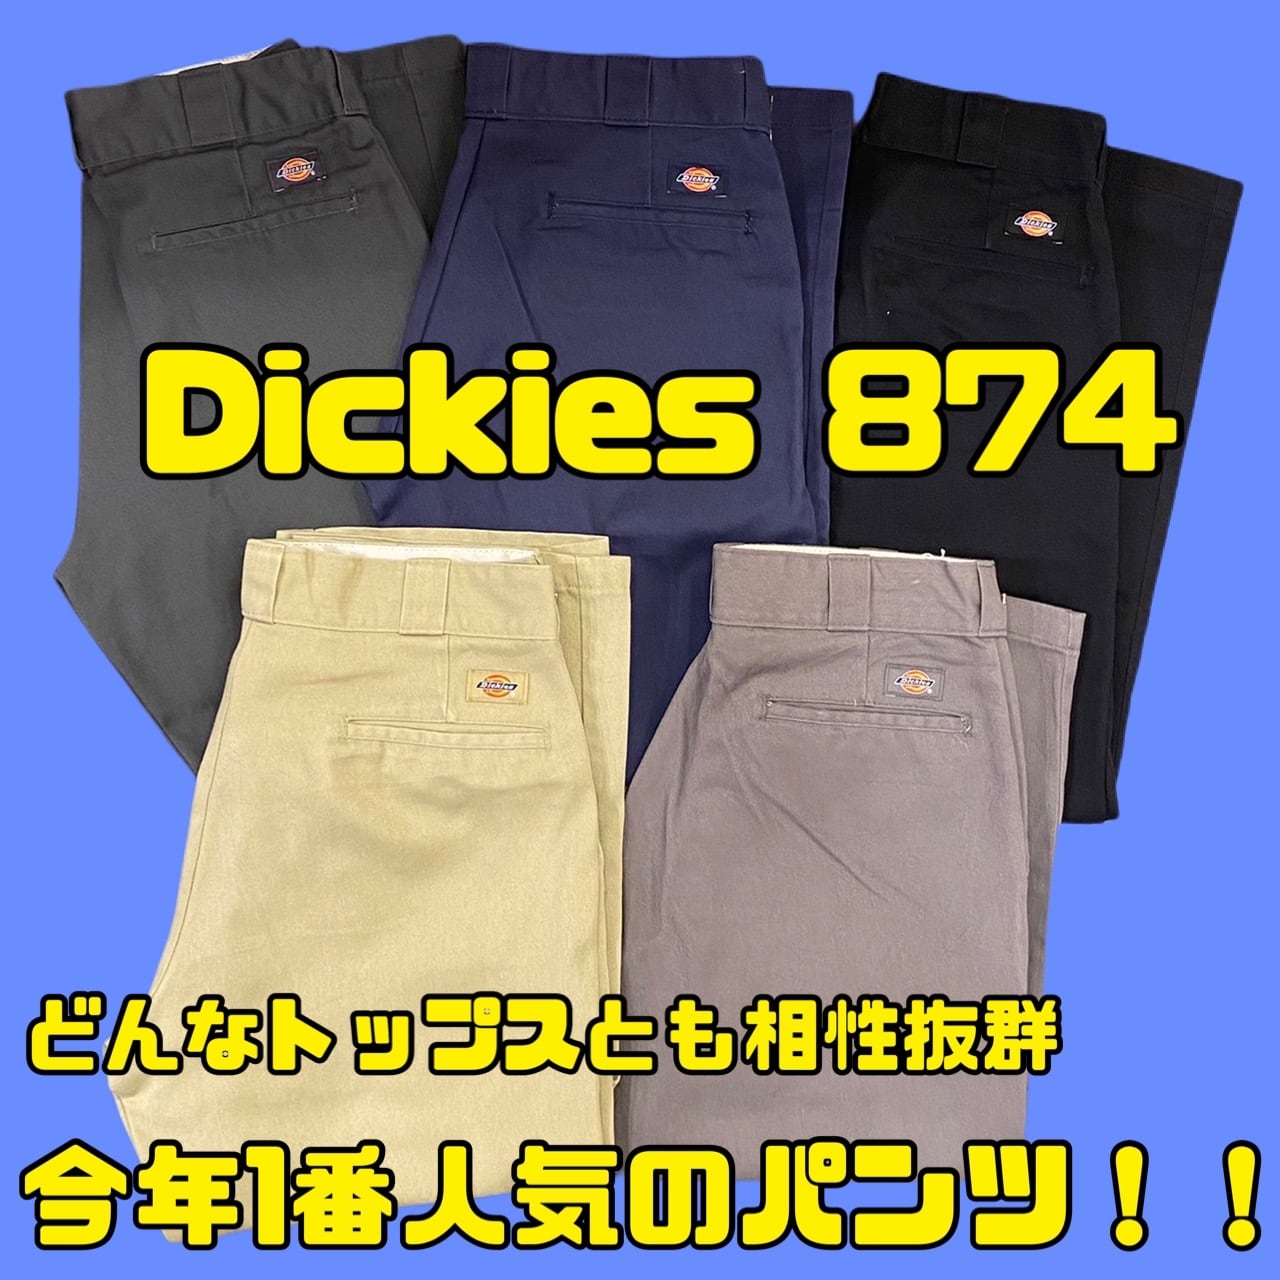 Dickies874セット